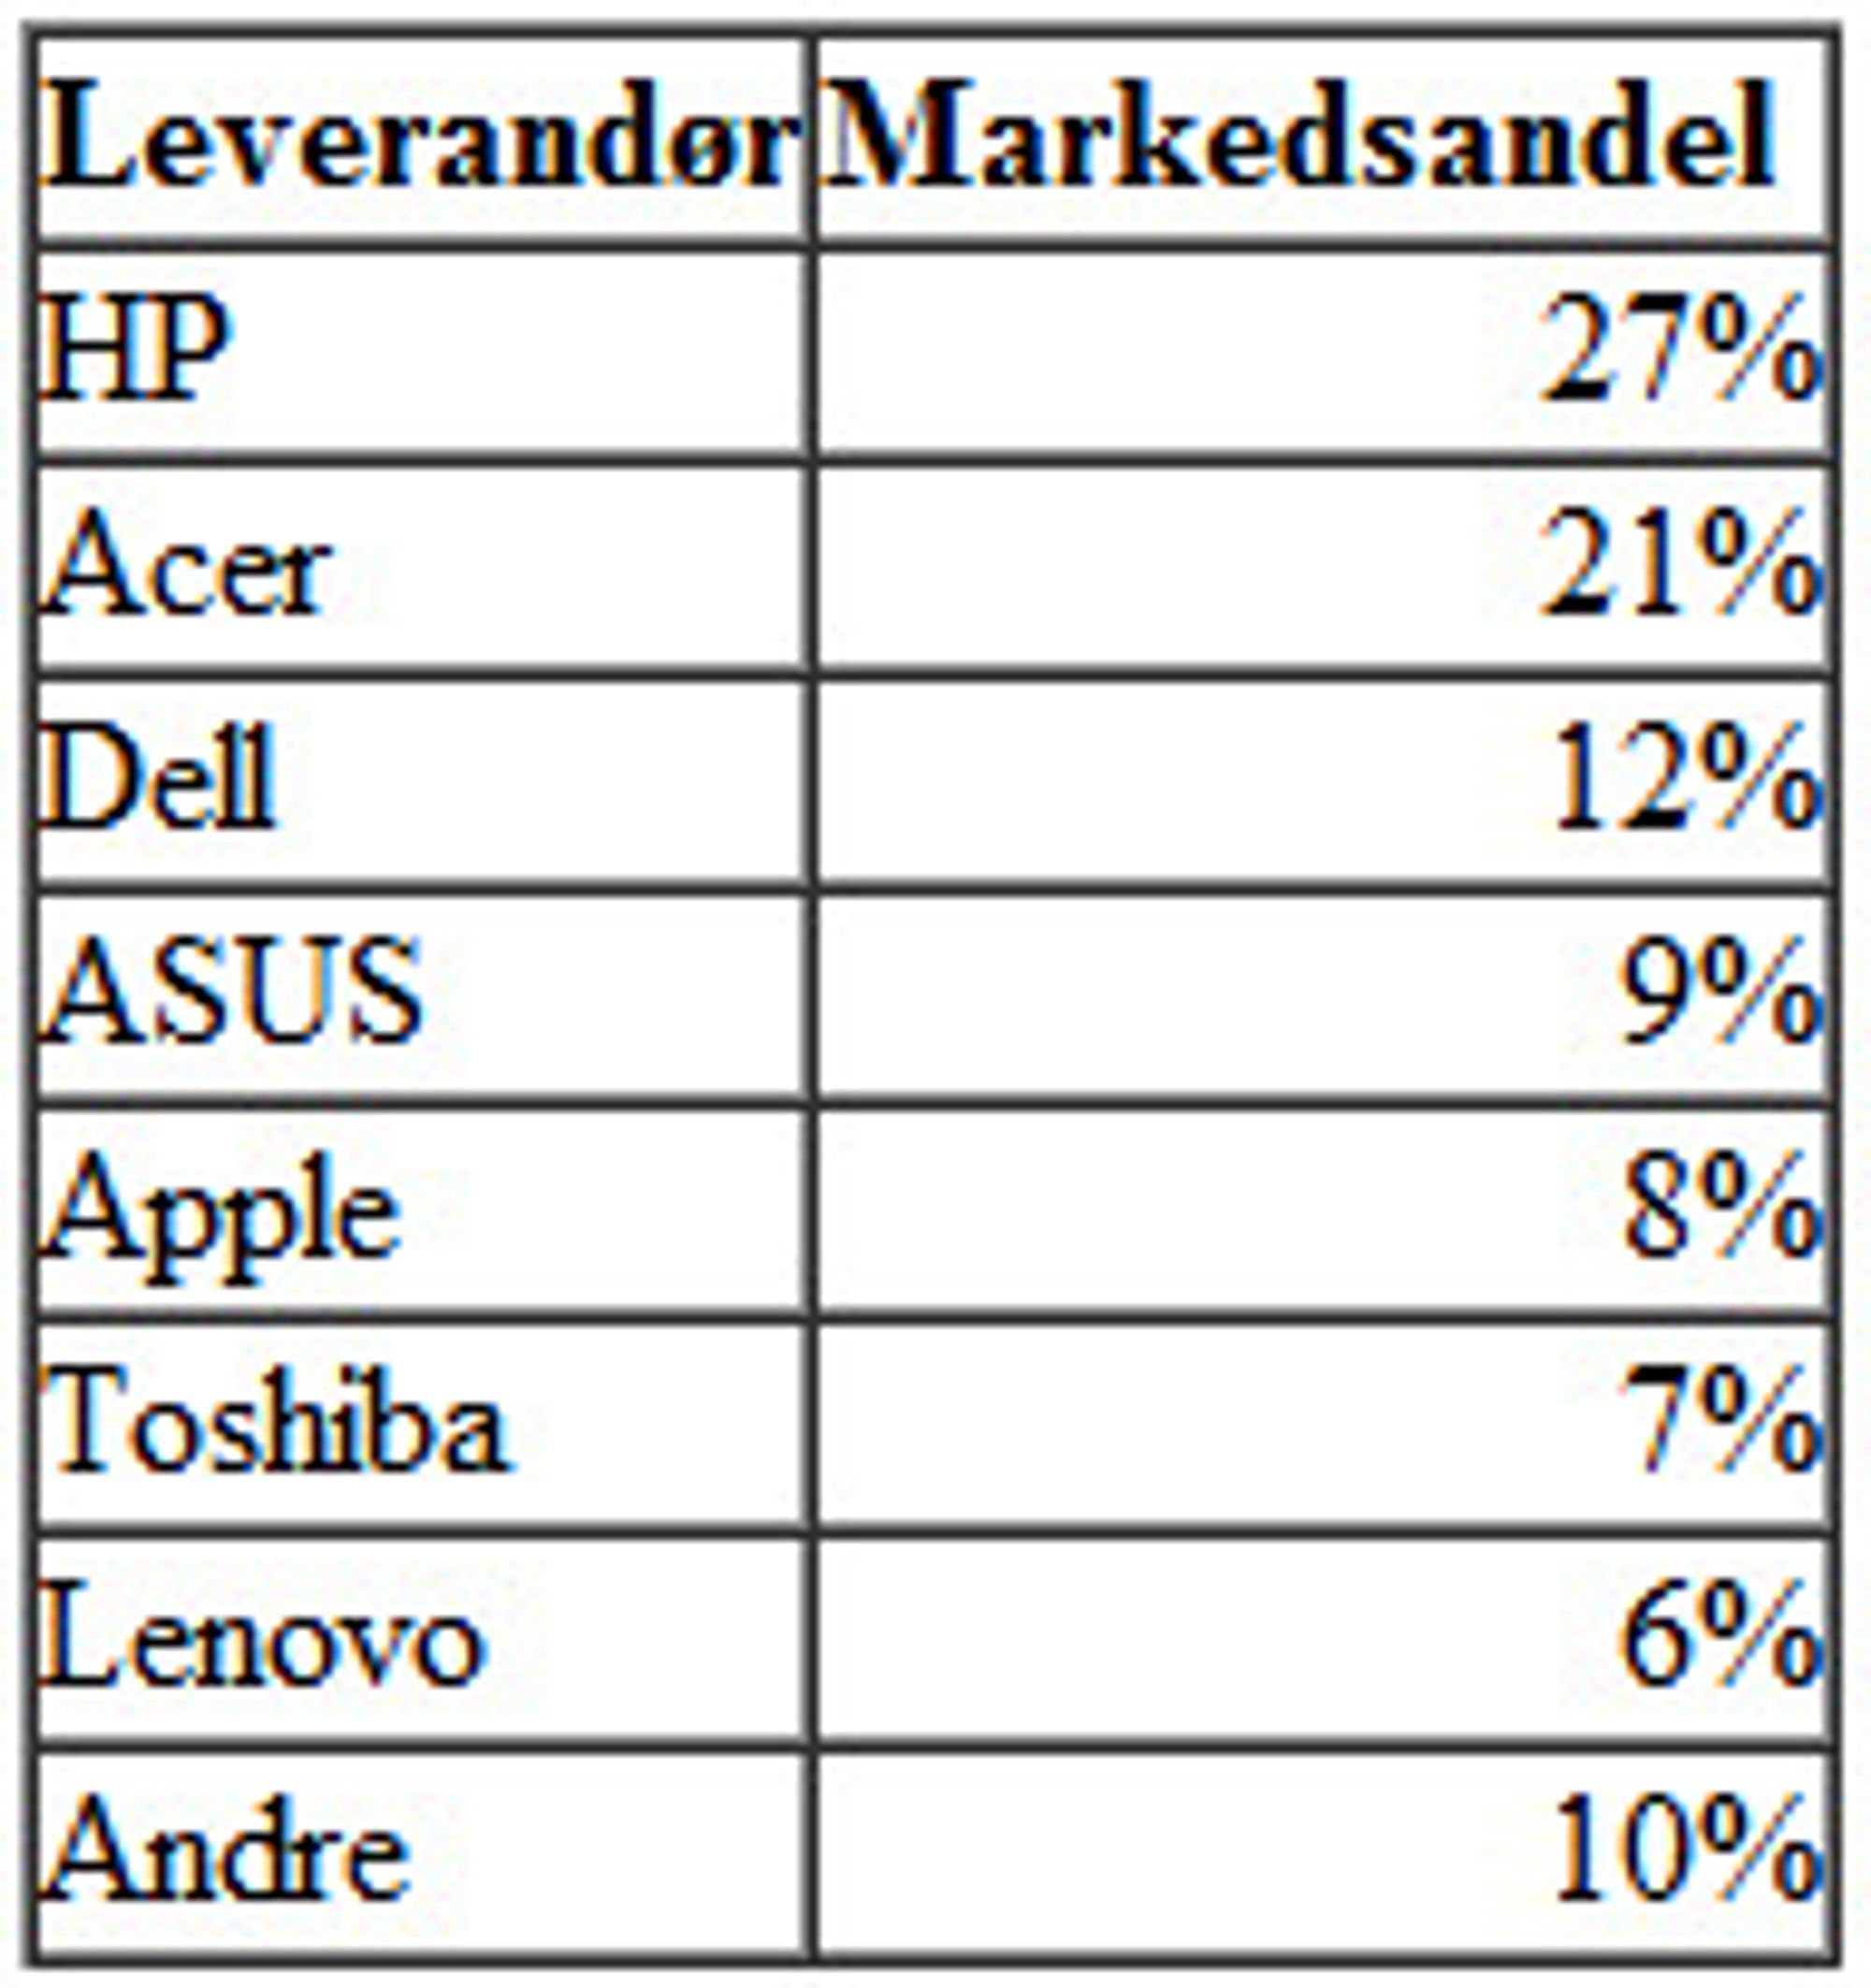 Markedsandelene til de største pc-leverandørene i Norge i andre kvartal av 2012.